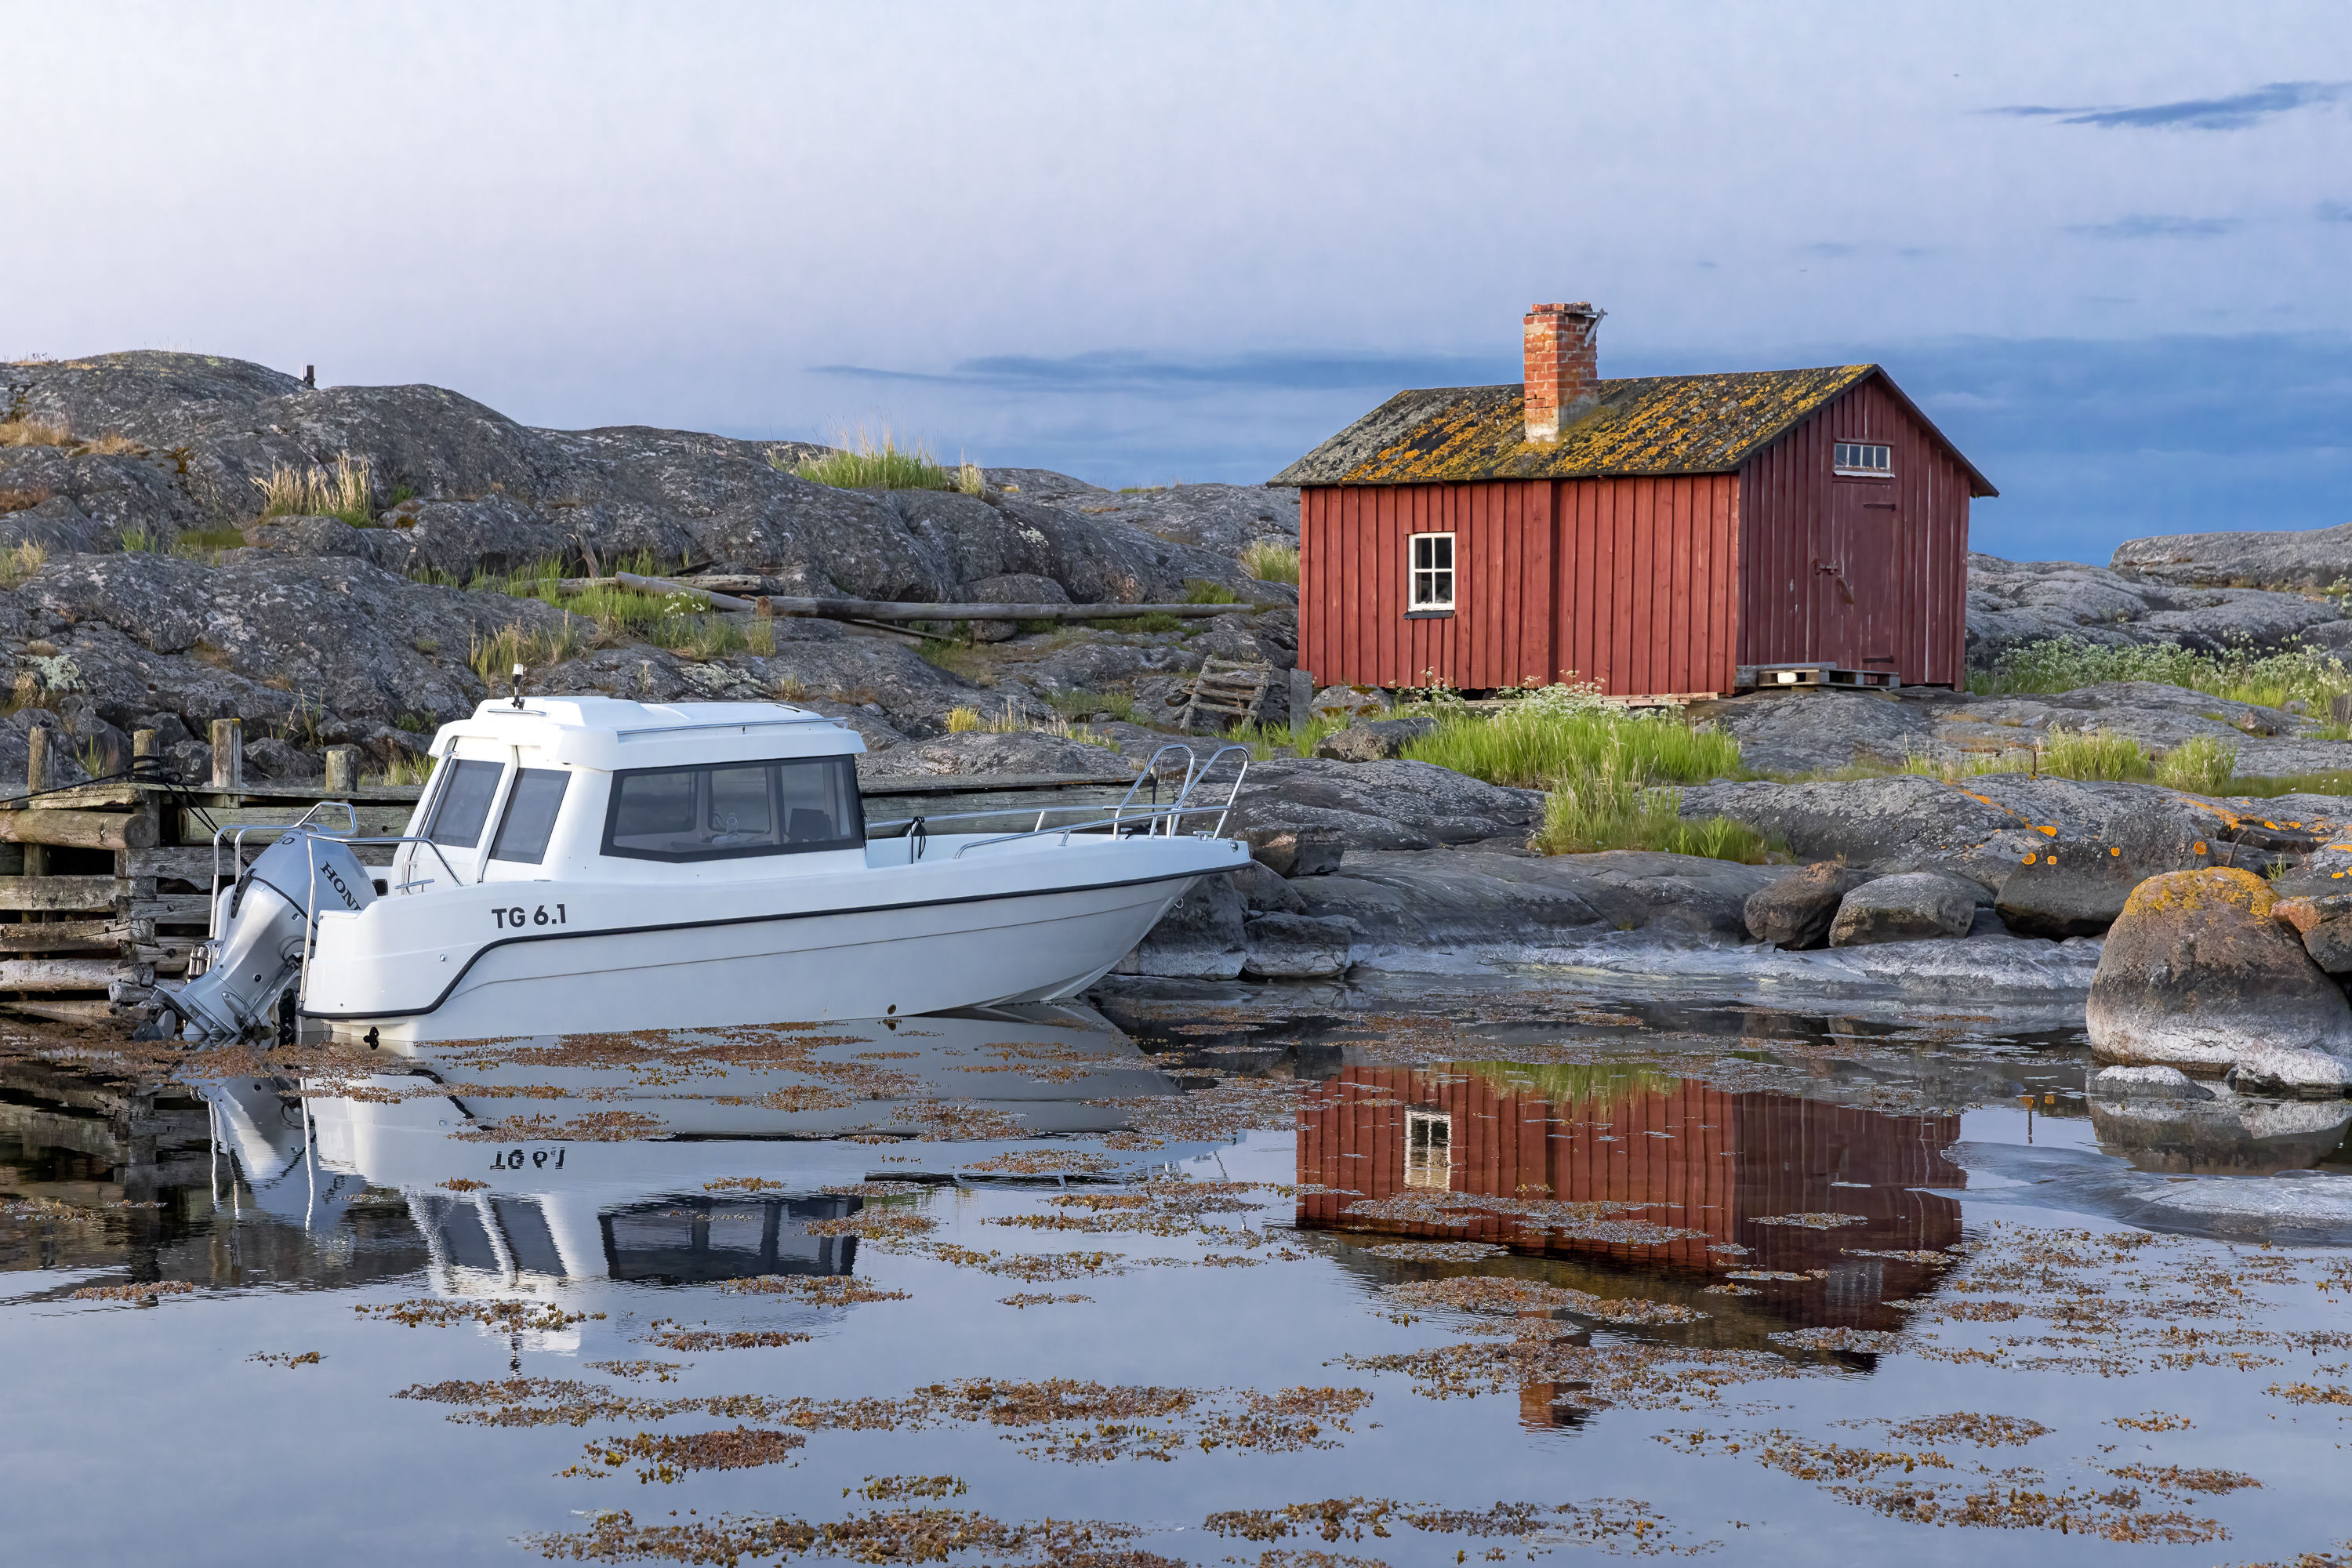 TG 6.1 kabinbåt står förtöjd vid gammal träbrygga i skärgården. Gammal röd fiskehytta i bakgrunden.